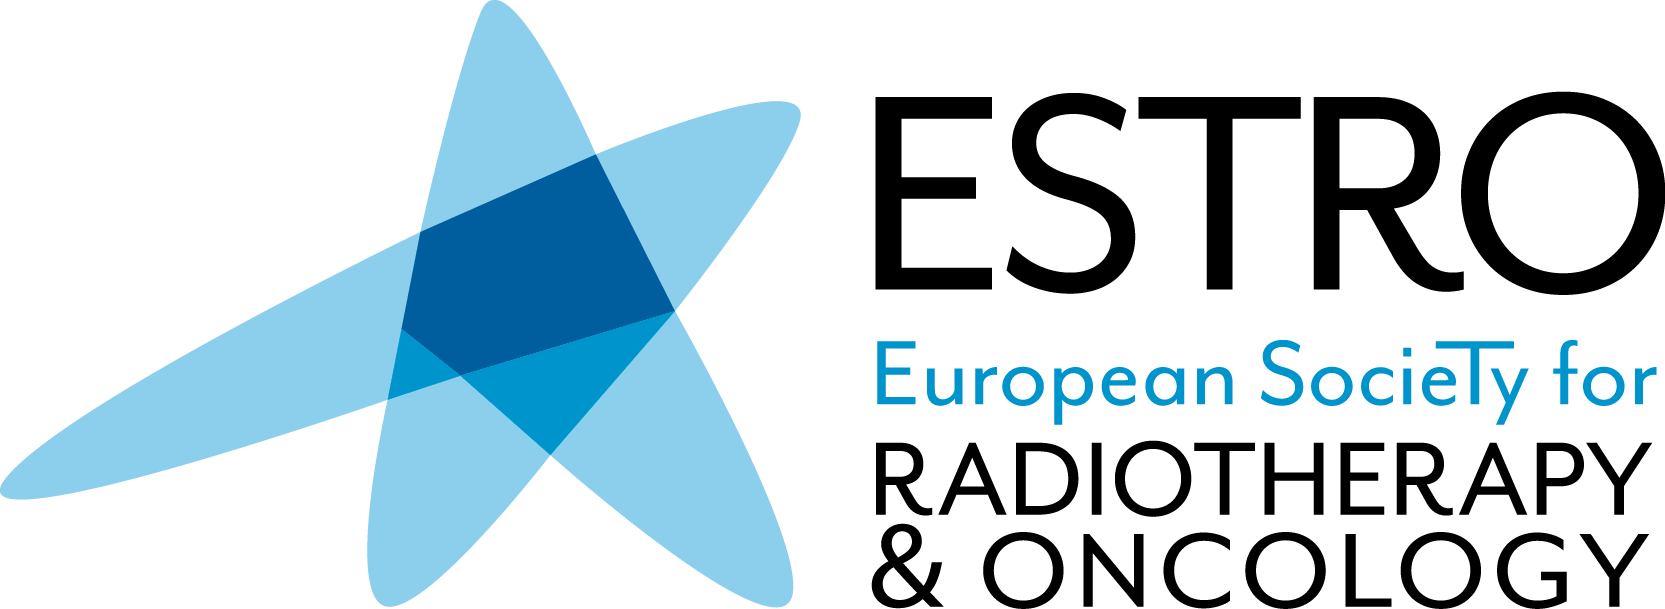 European society. Европейское общество онкологов. Естро. Эстро лого. Estro сообщество логотип.